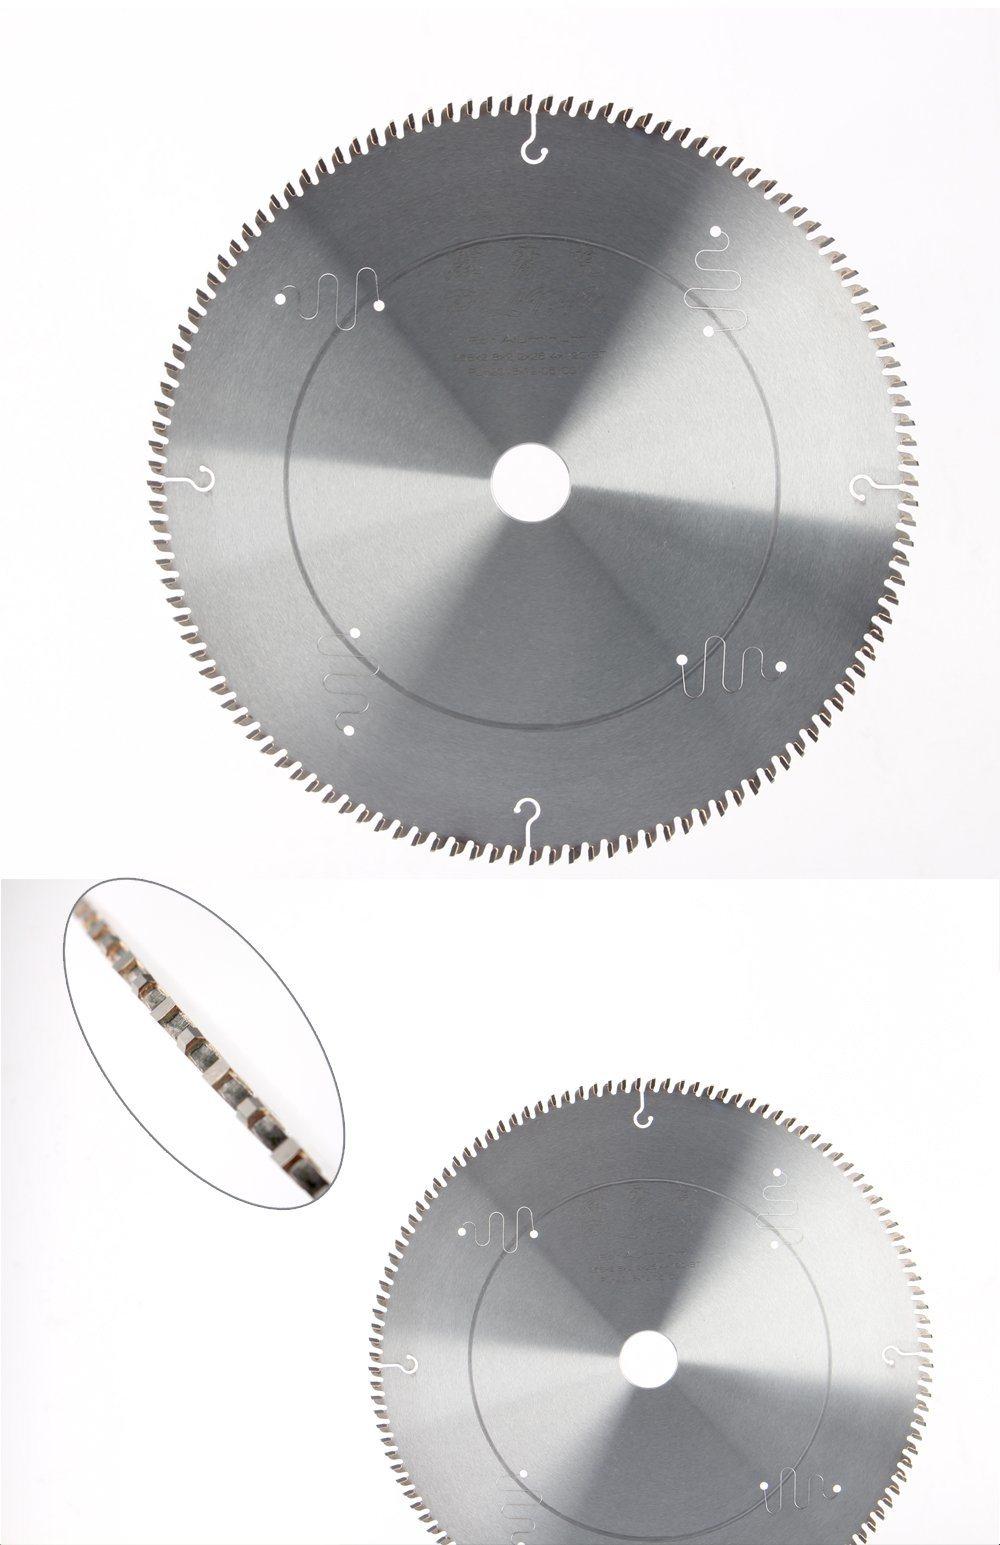 Professional Tct Circular Saw Blade for Aluminum